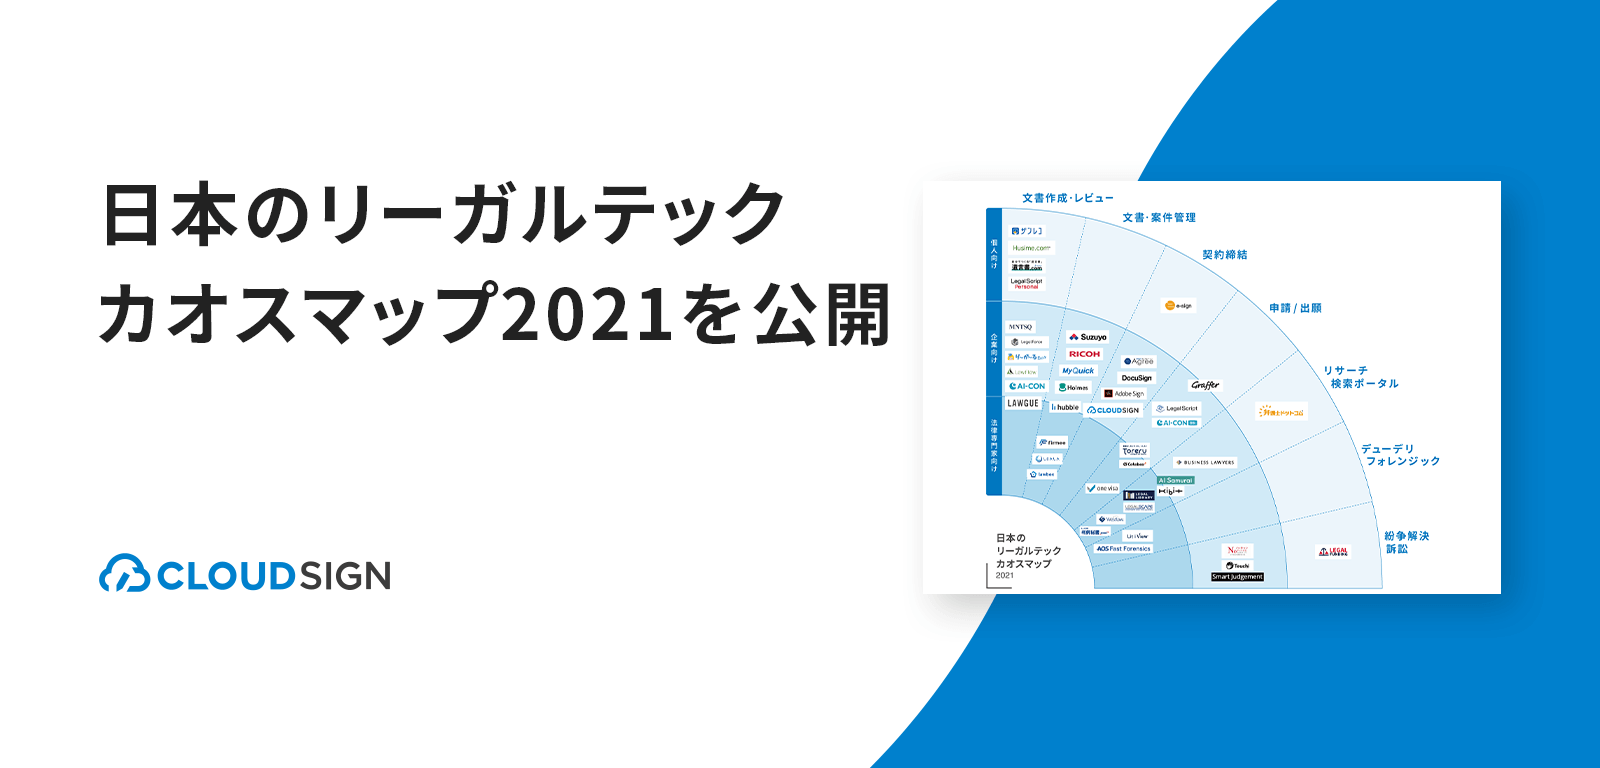 日本のリーガルテックカオスマップ2021を公開